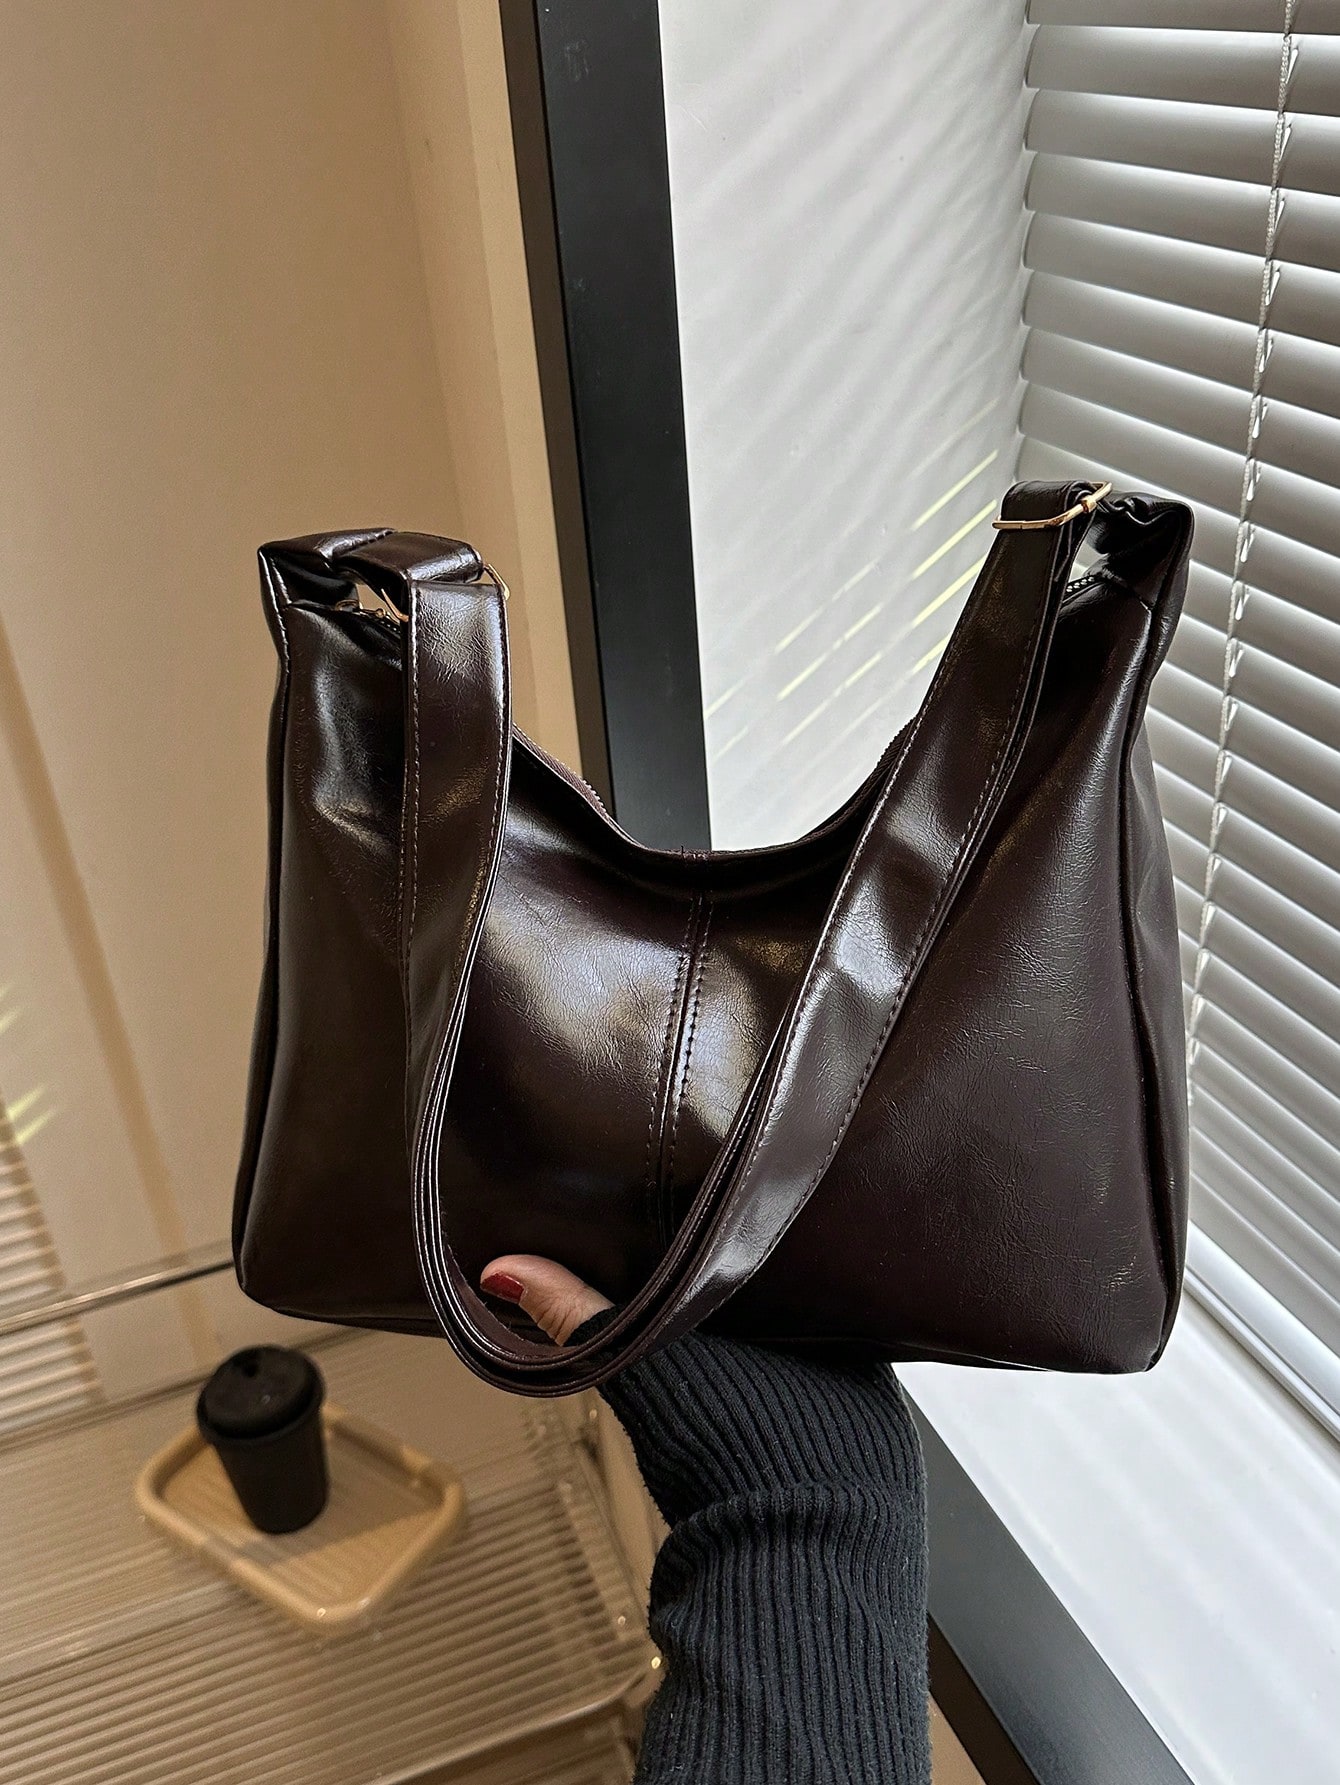 Женская сумка через плечо — винтажный стиль, коричневый рюкзак женский из мягкой кожи сумочка на плечо в стиле ретро повседневный дорожный ранец с карманами брендовый дизайн